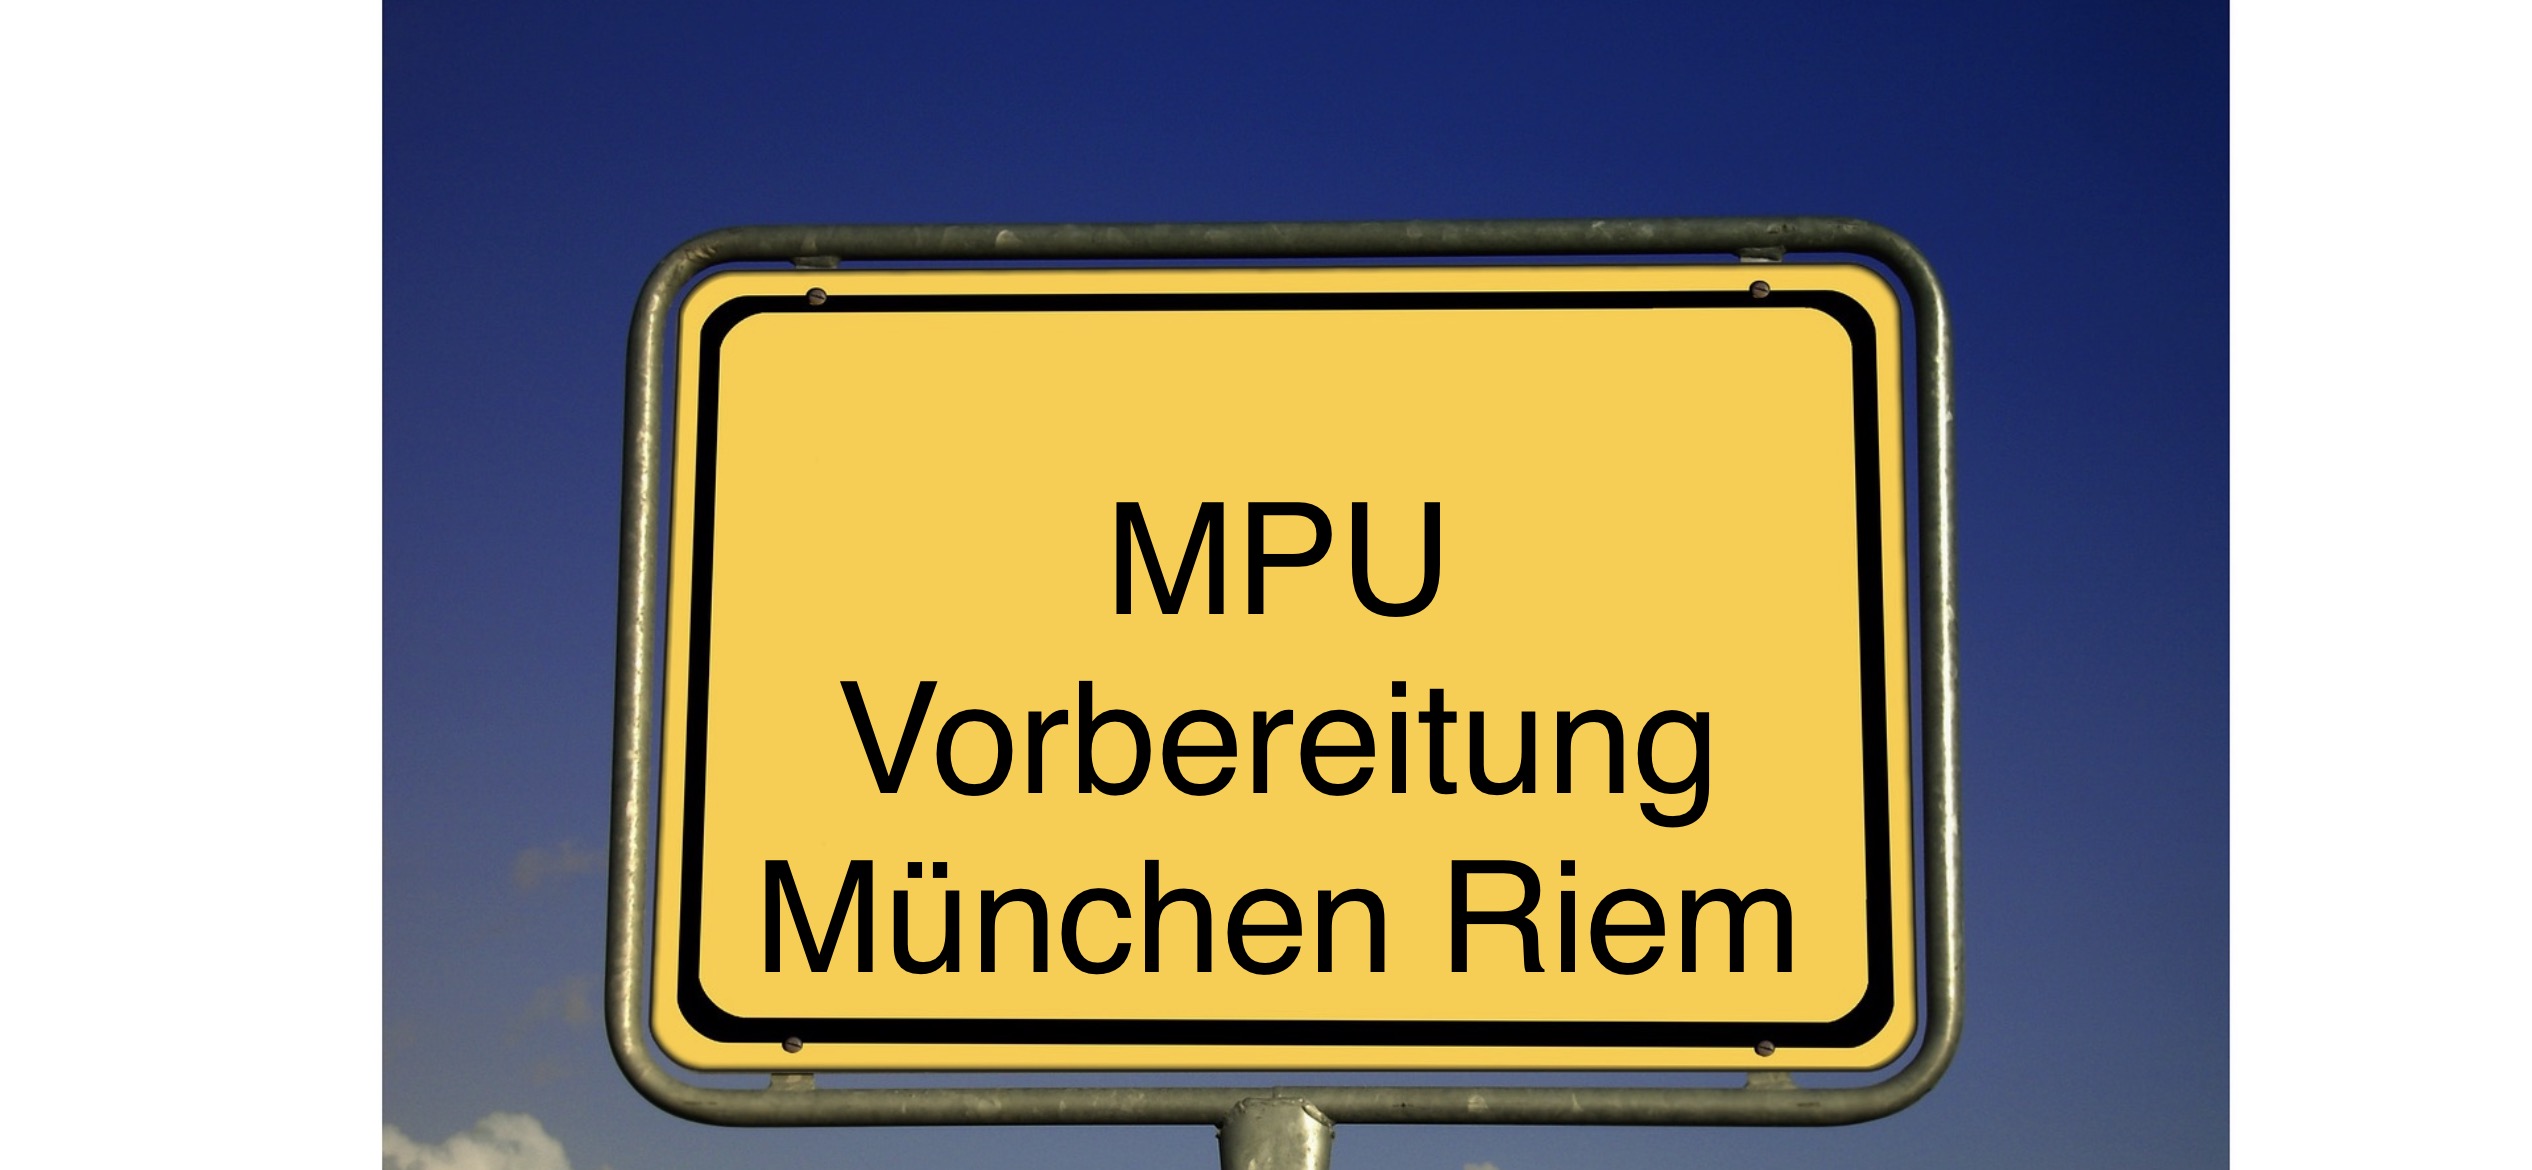 MPU Vorbereitung München-Riem